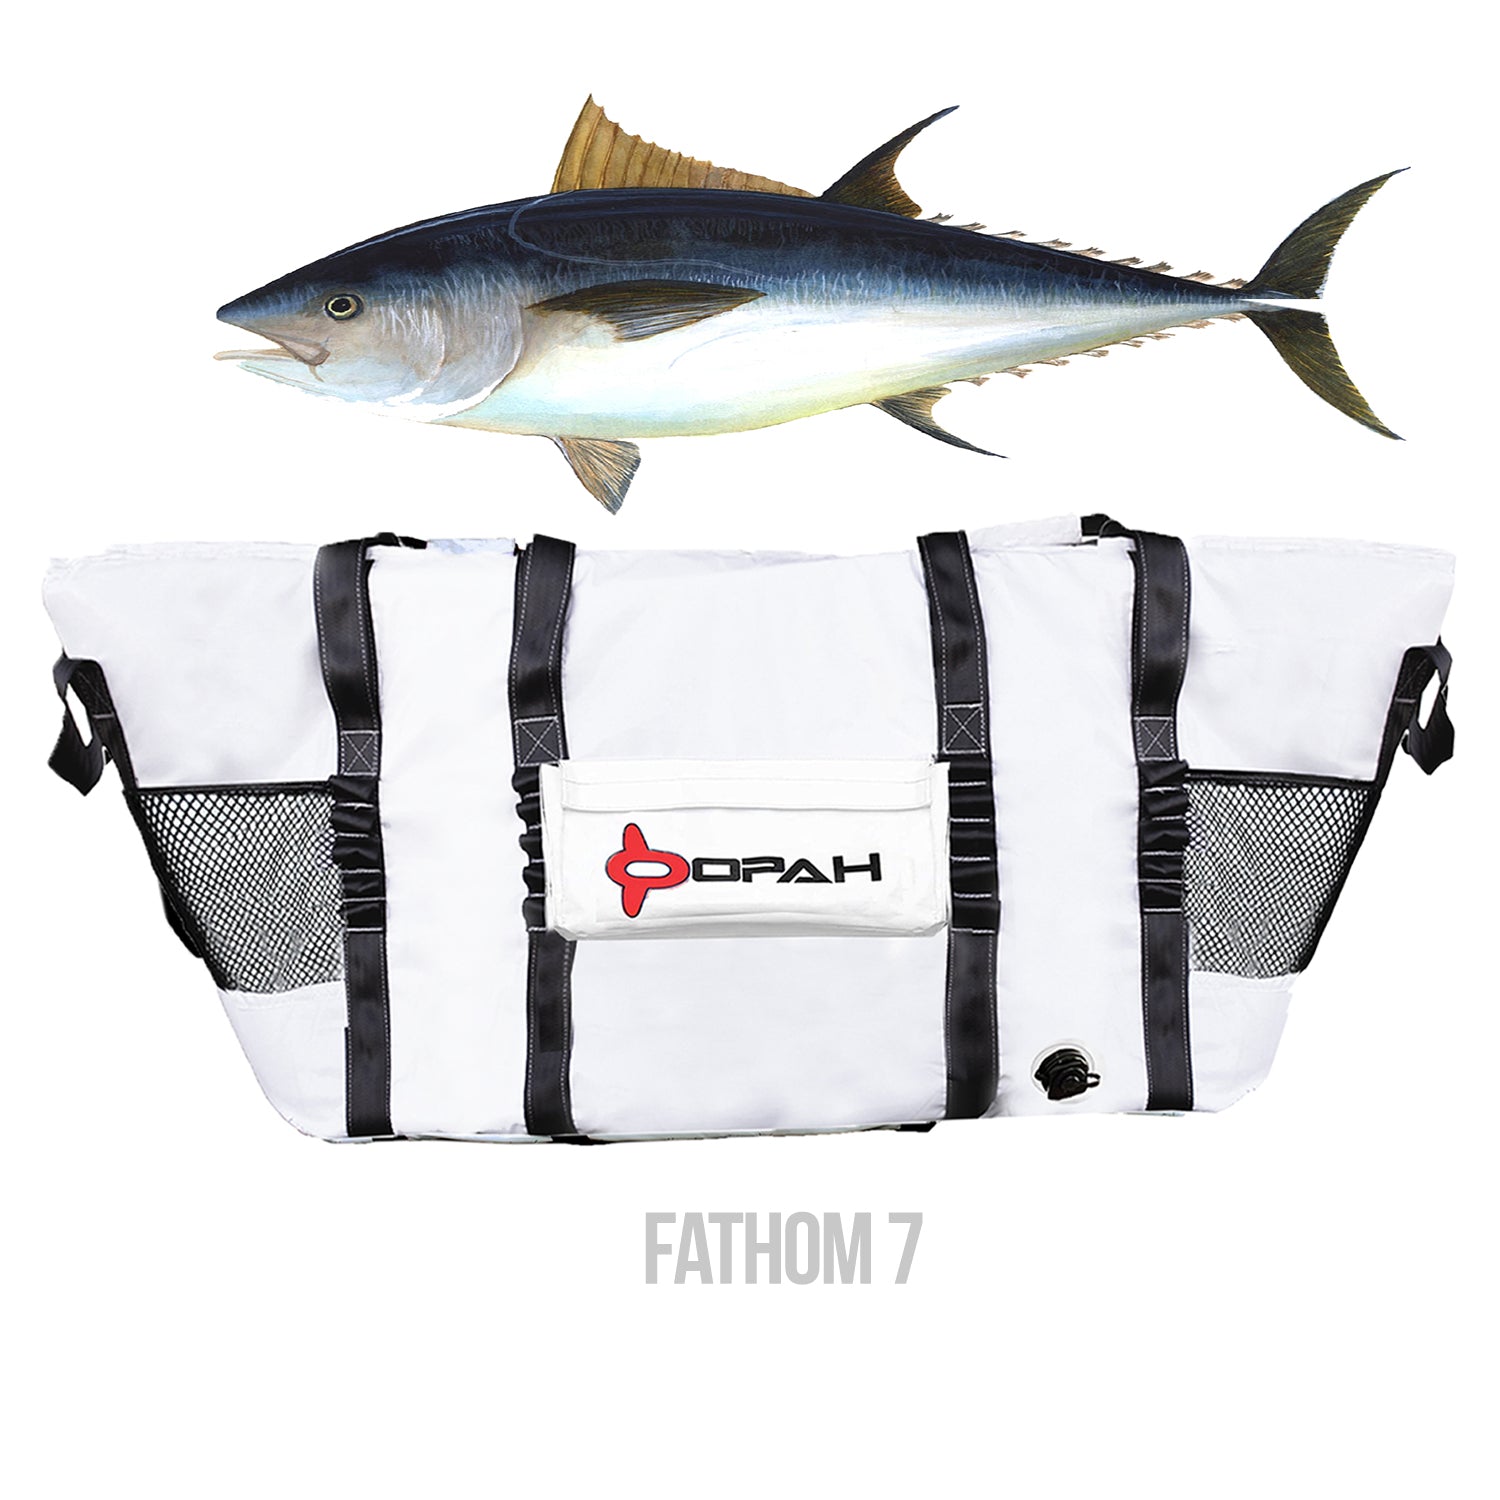 Fathom 7 Insulated Cooler Bag, Cow Tuna 82L x 30W x 36H